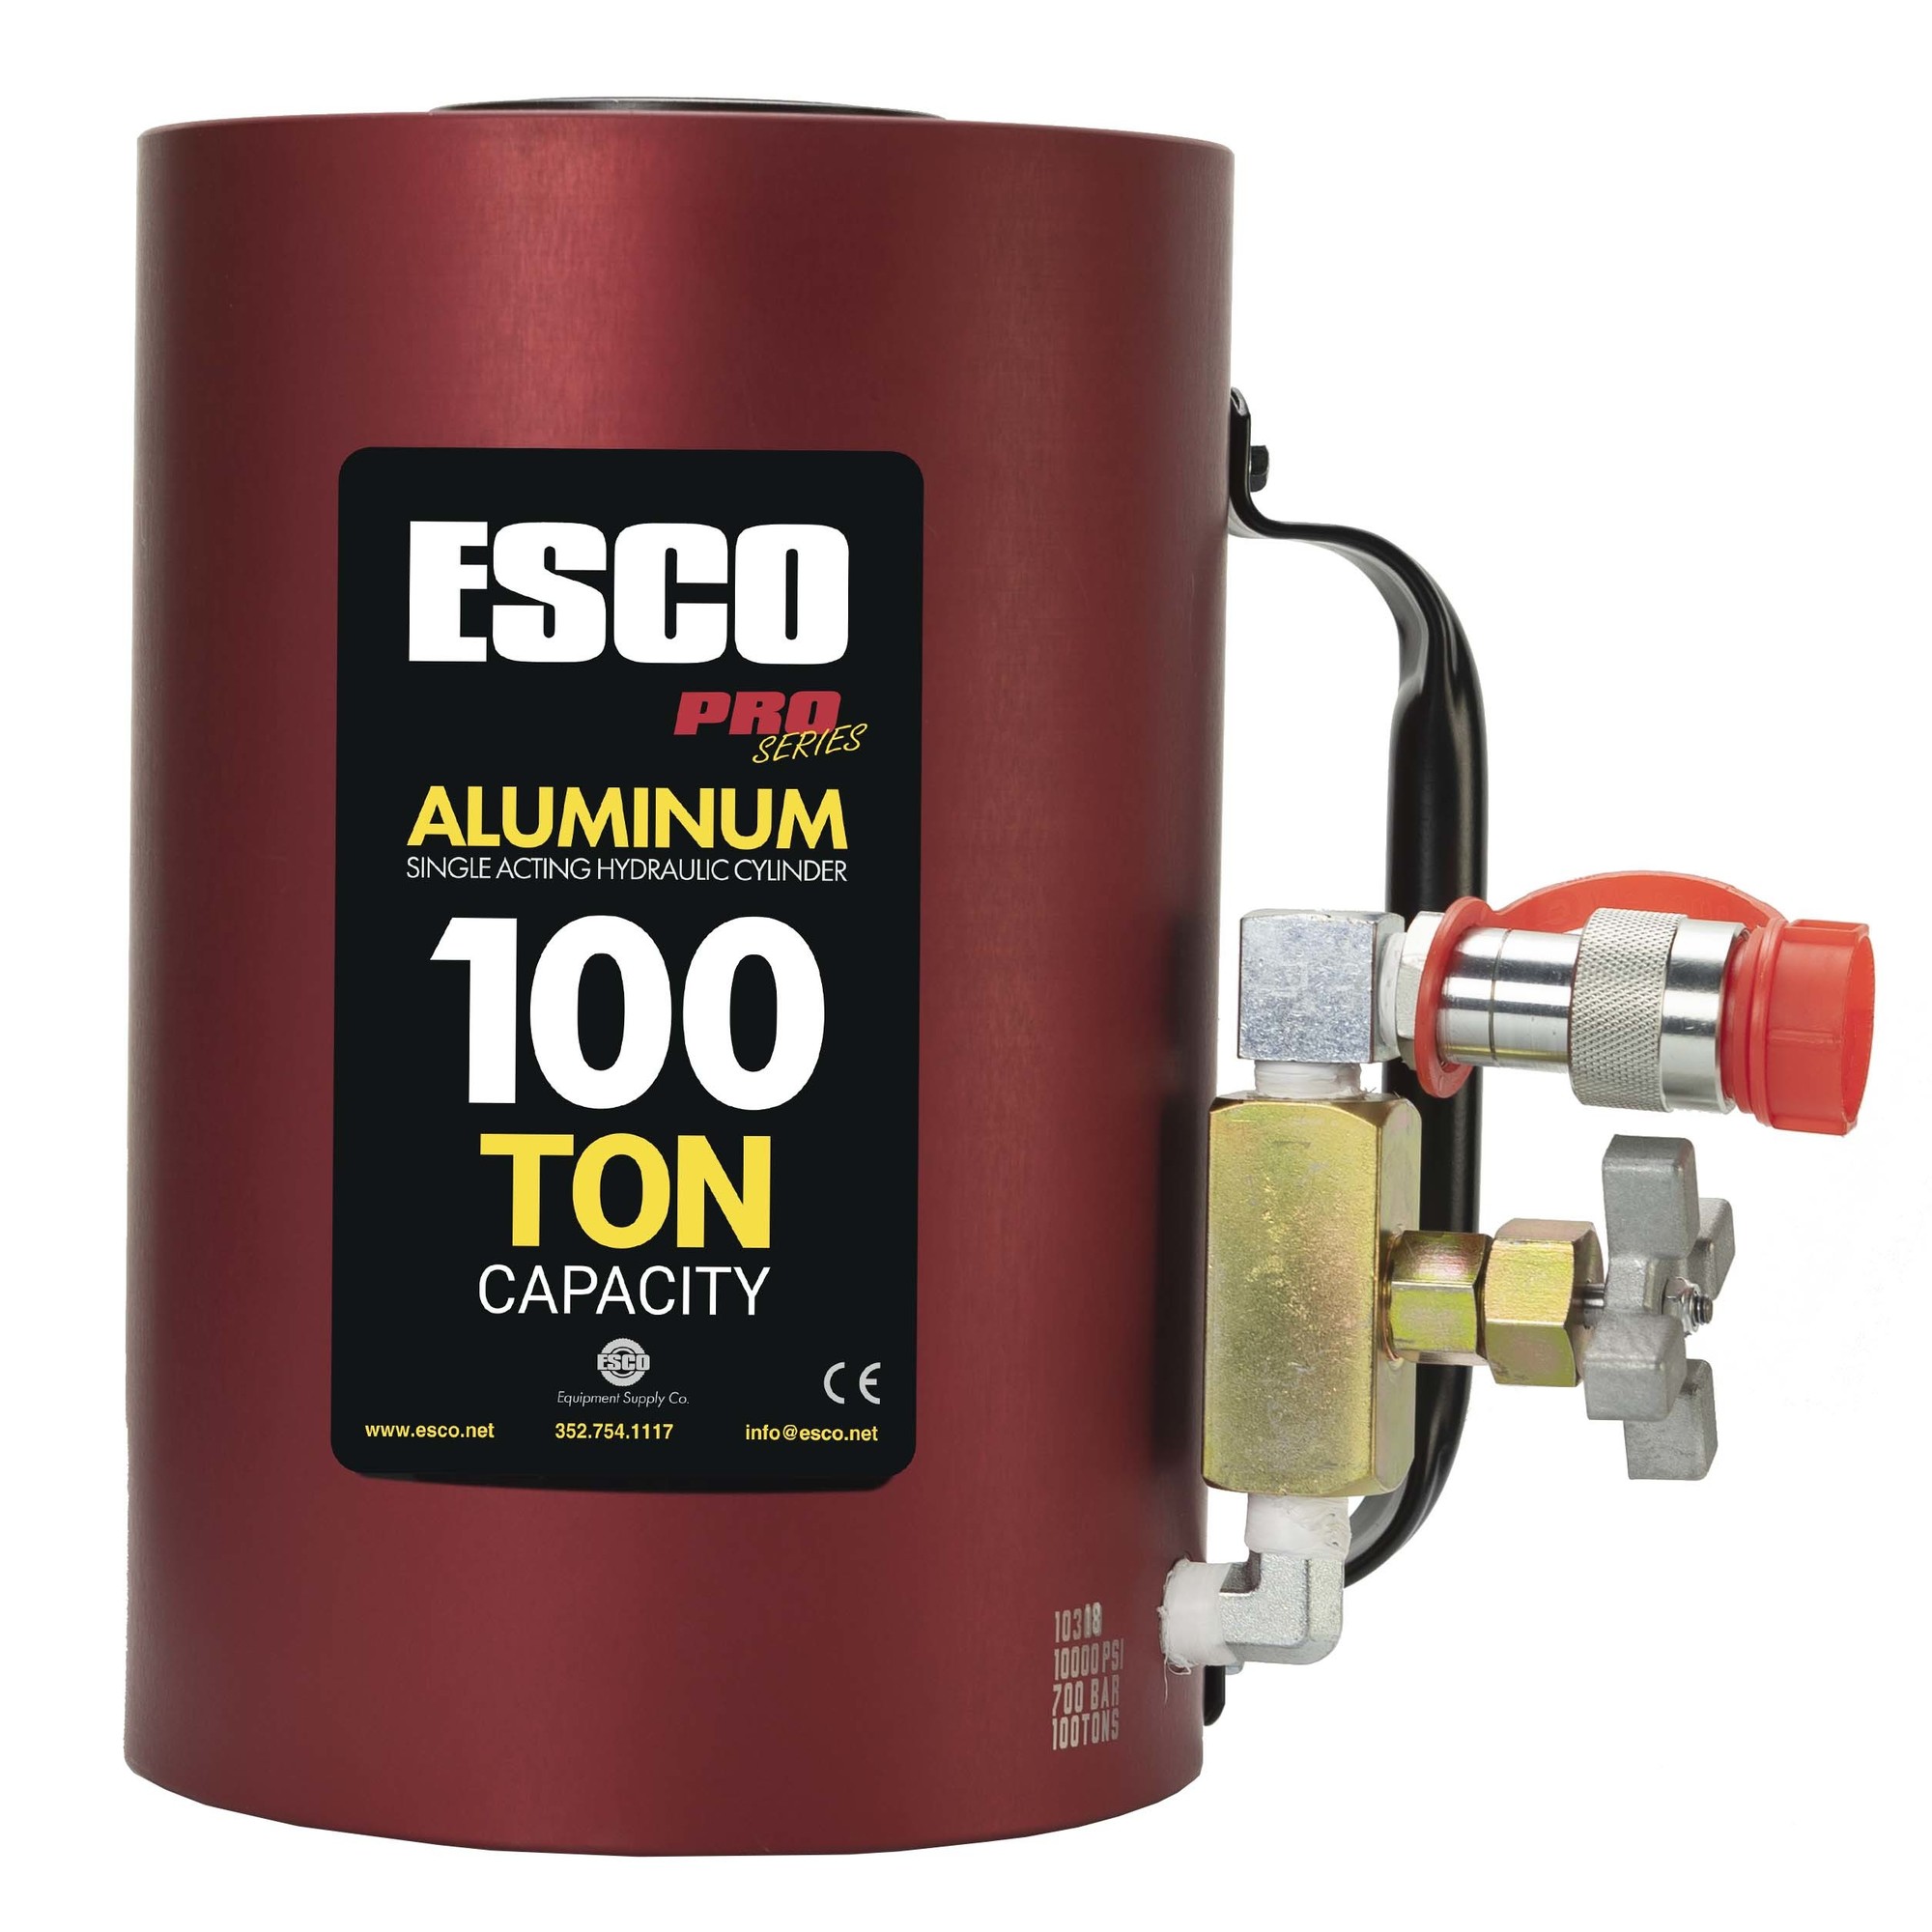 ESCO, 100 Ton Aluminum Jack, Lift Capacity 100 Tons, Model 10318